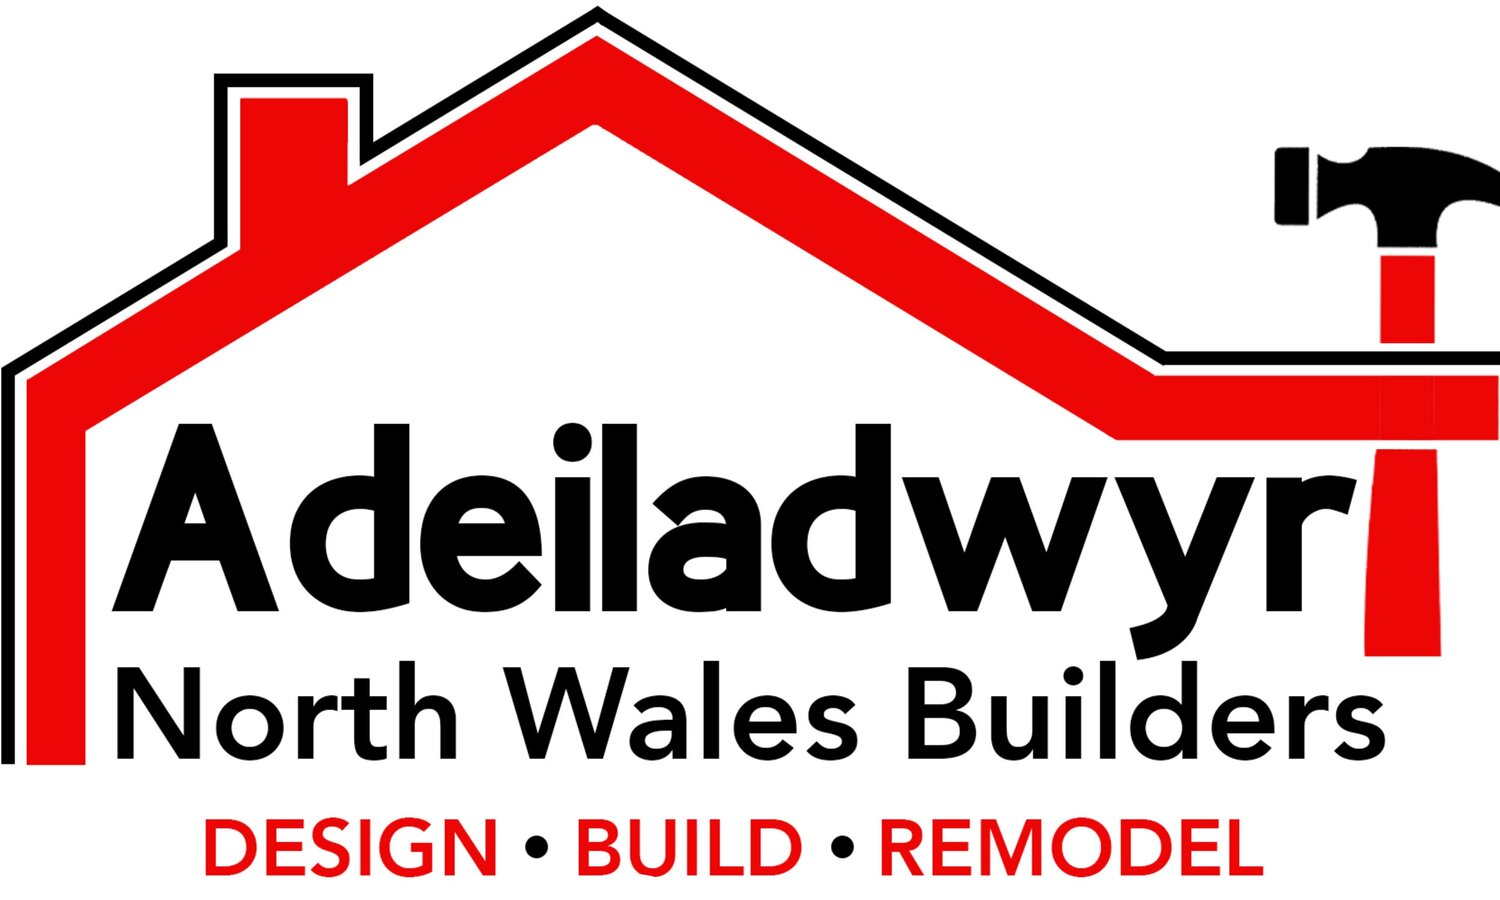 Adeiladwyr North Wales Builders